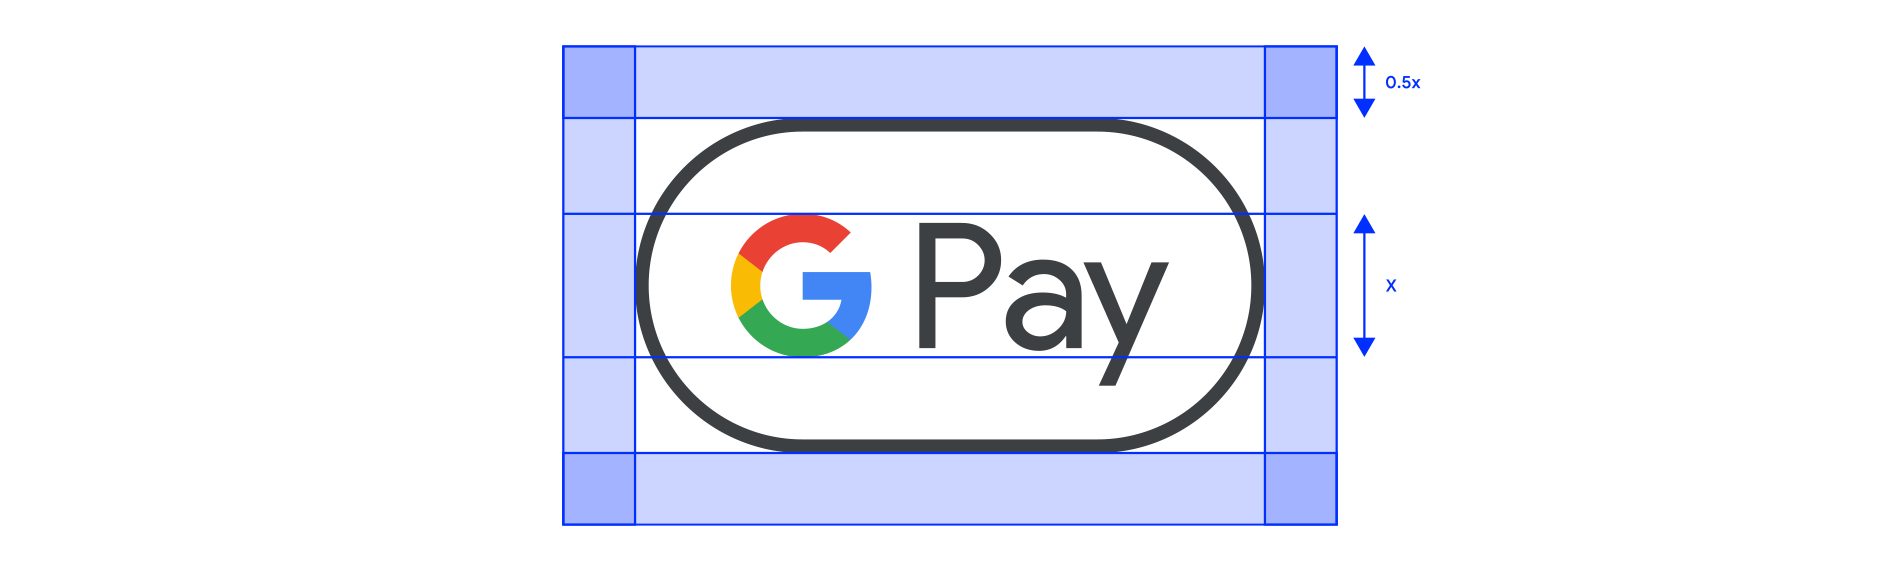 Пример свободного пространства вокруг символа Google Pay